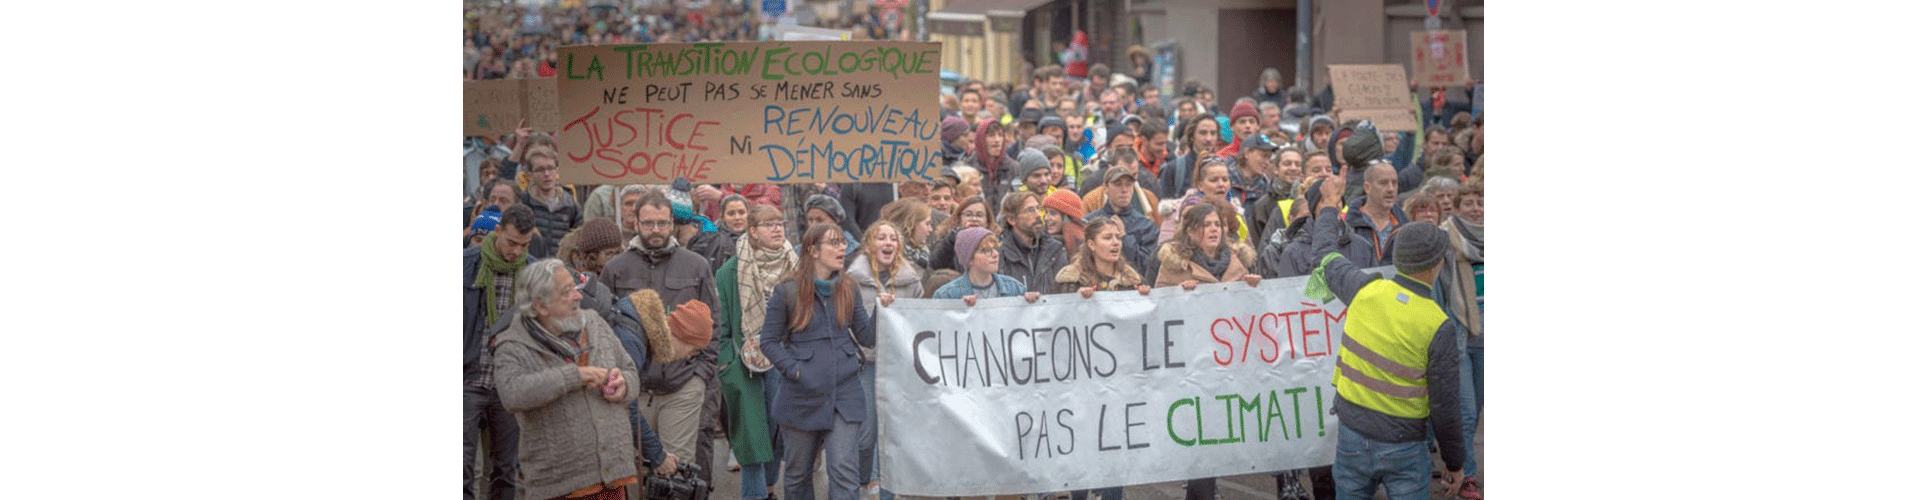 Marche climat : Changeons le système pas le climat - Crédit Photo : Sébastien Fauvel